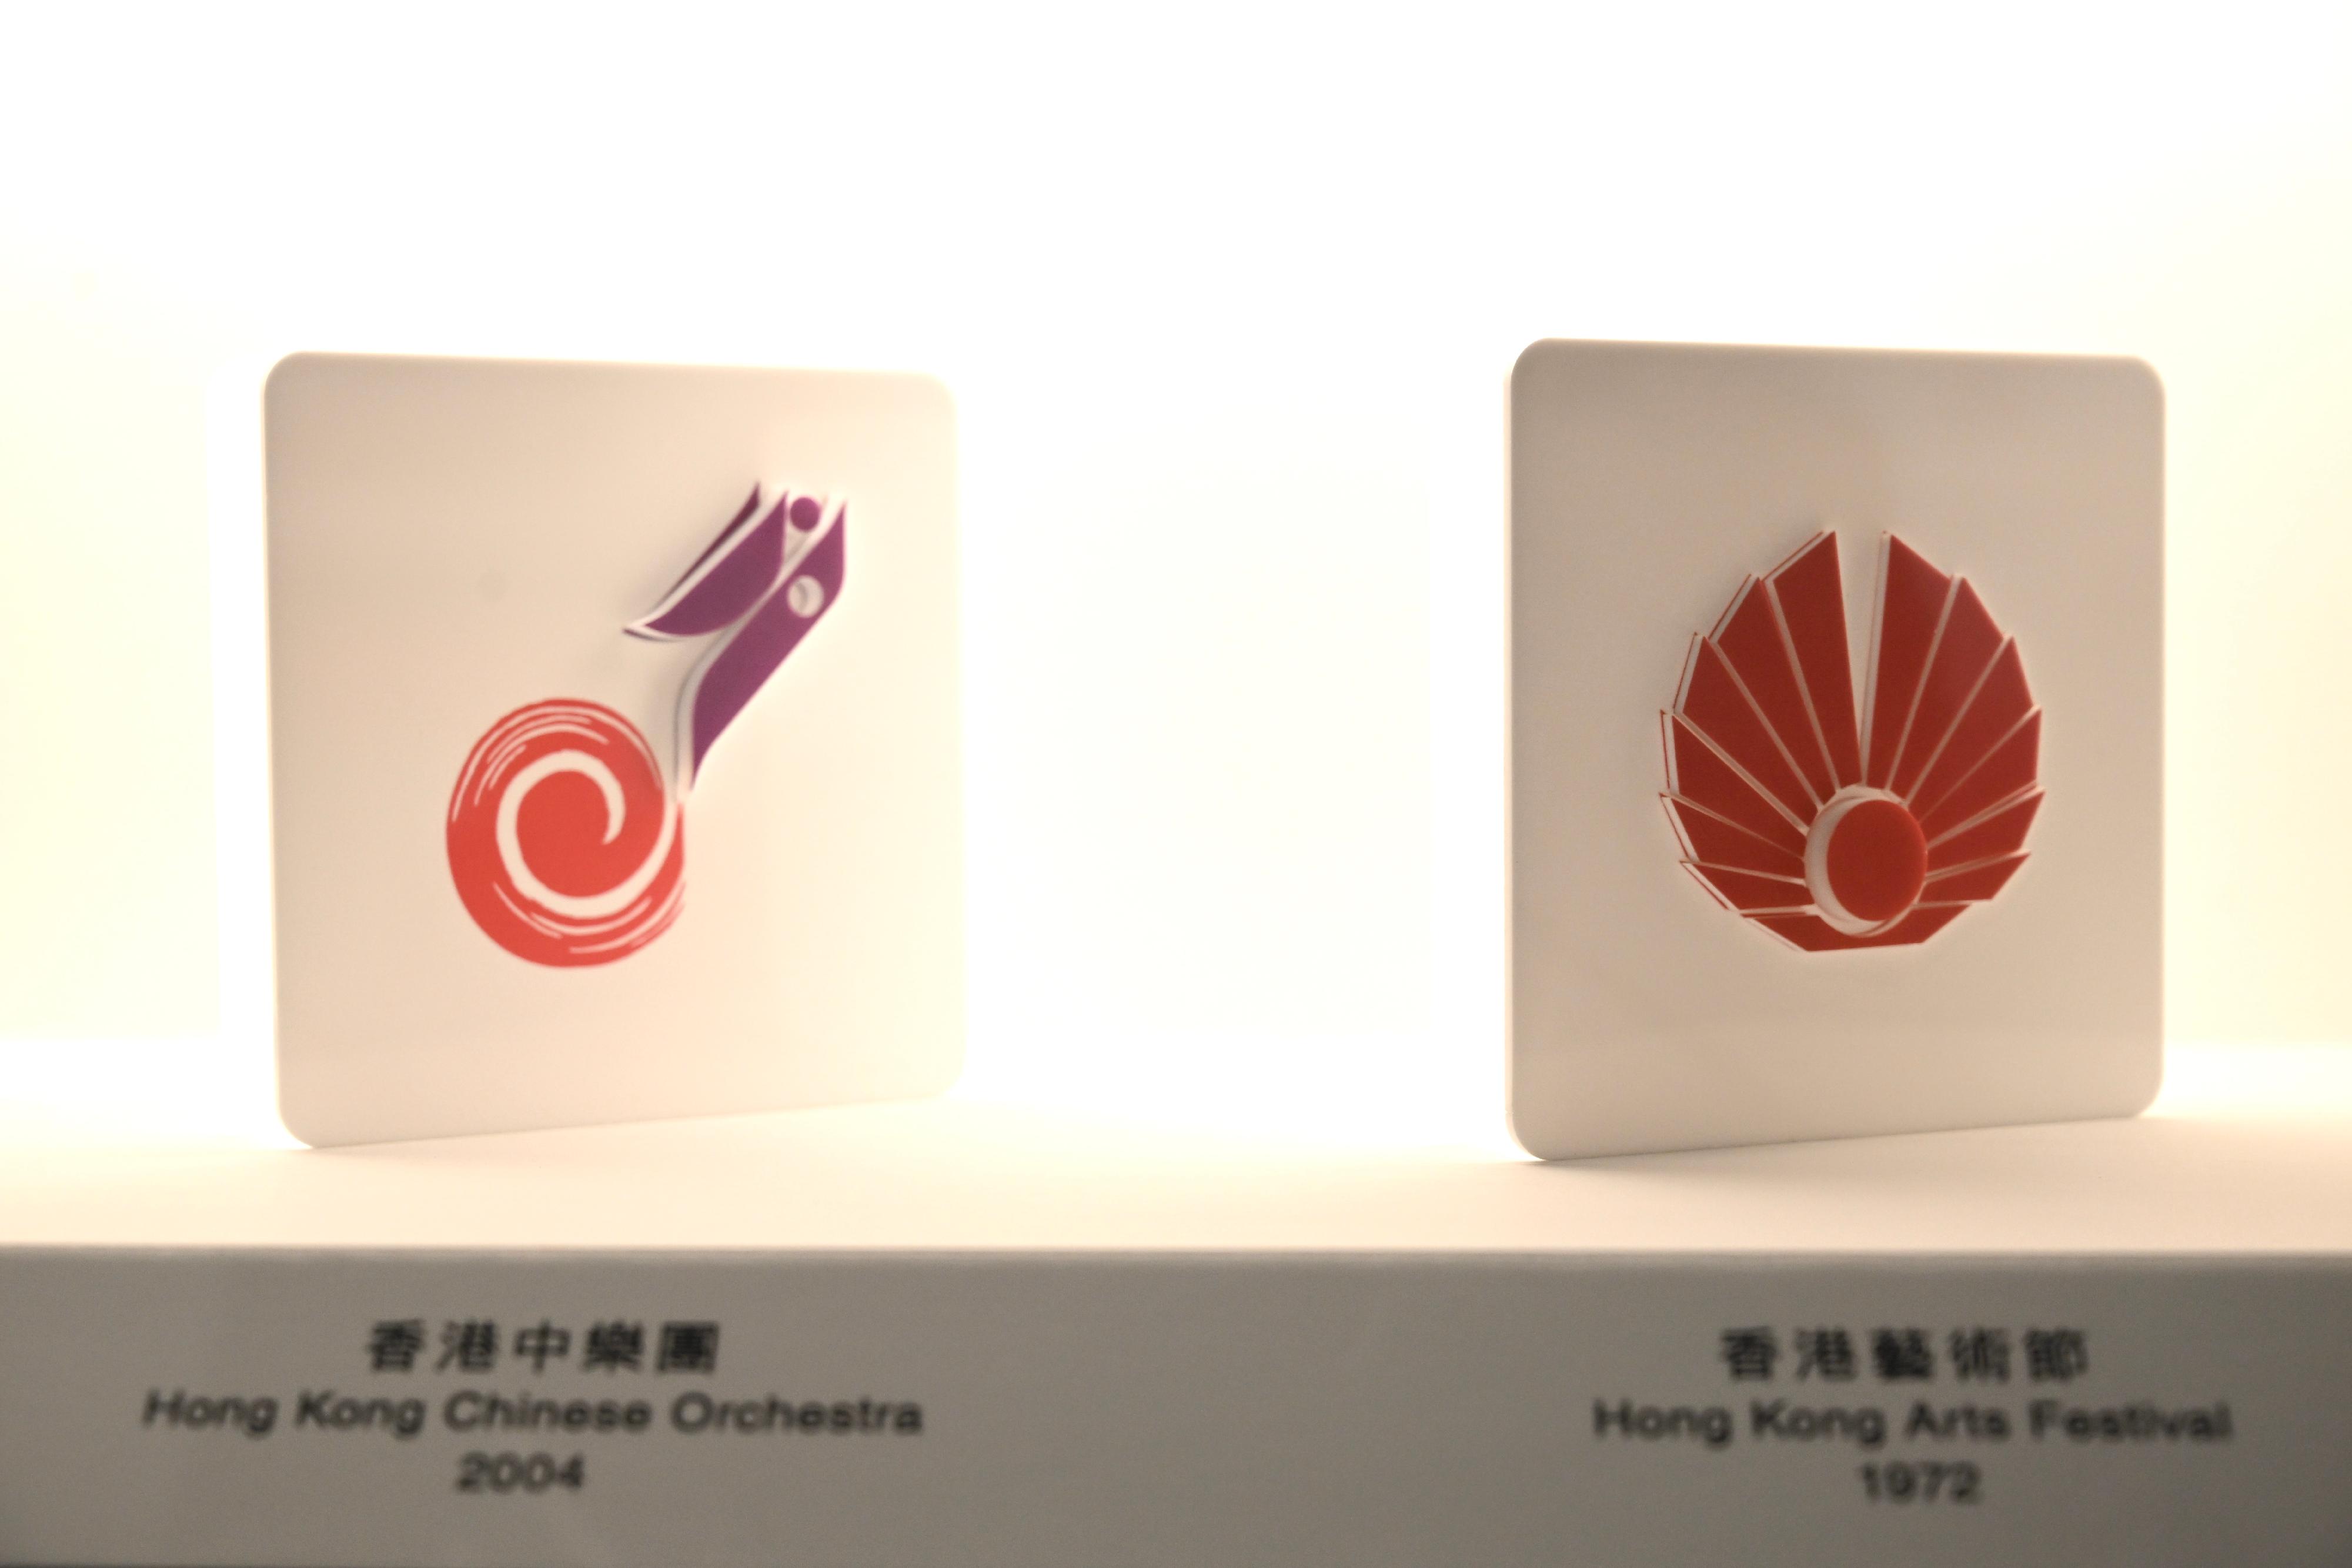 香港中樂團（左）和香港藝術節（右）的標誌設計。